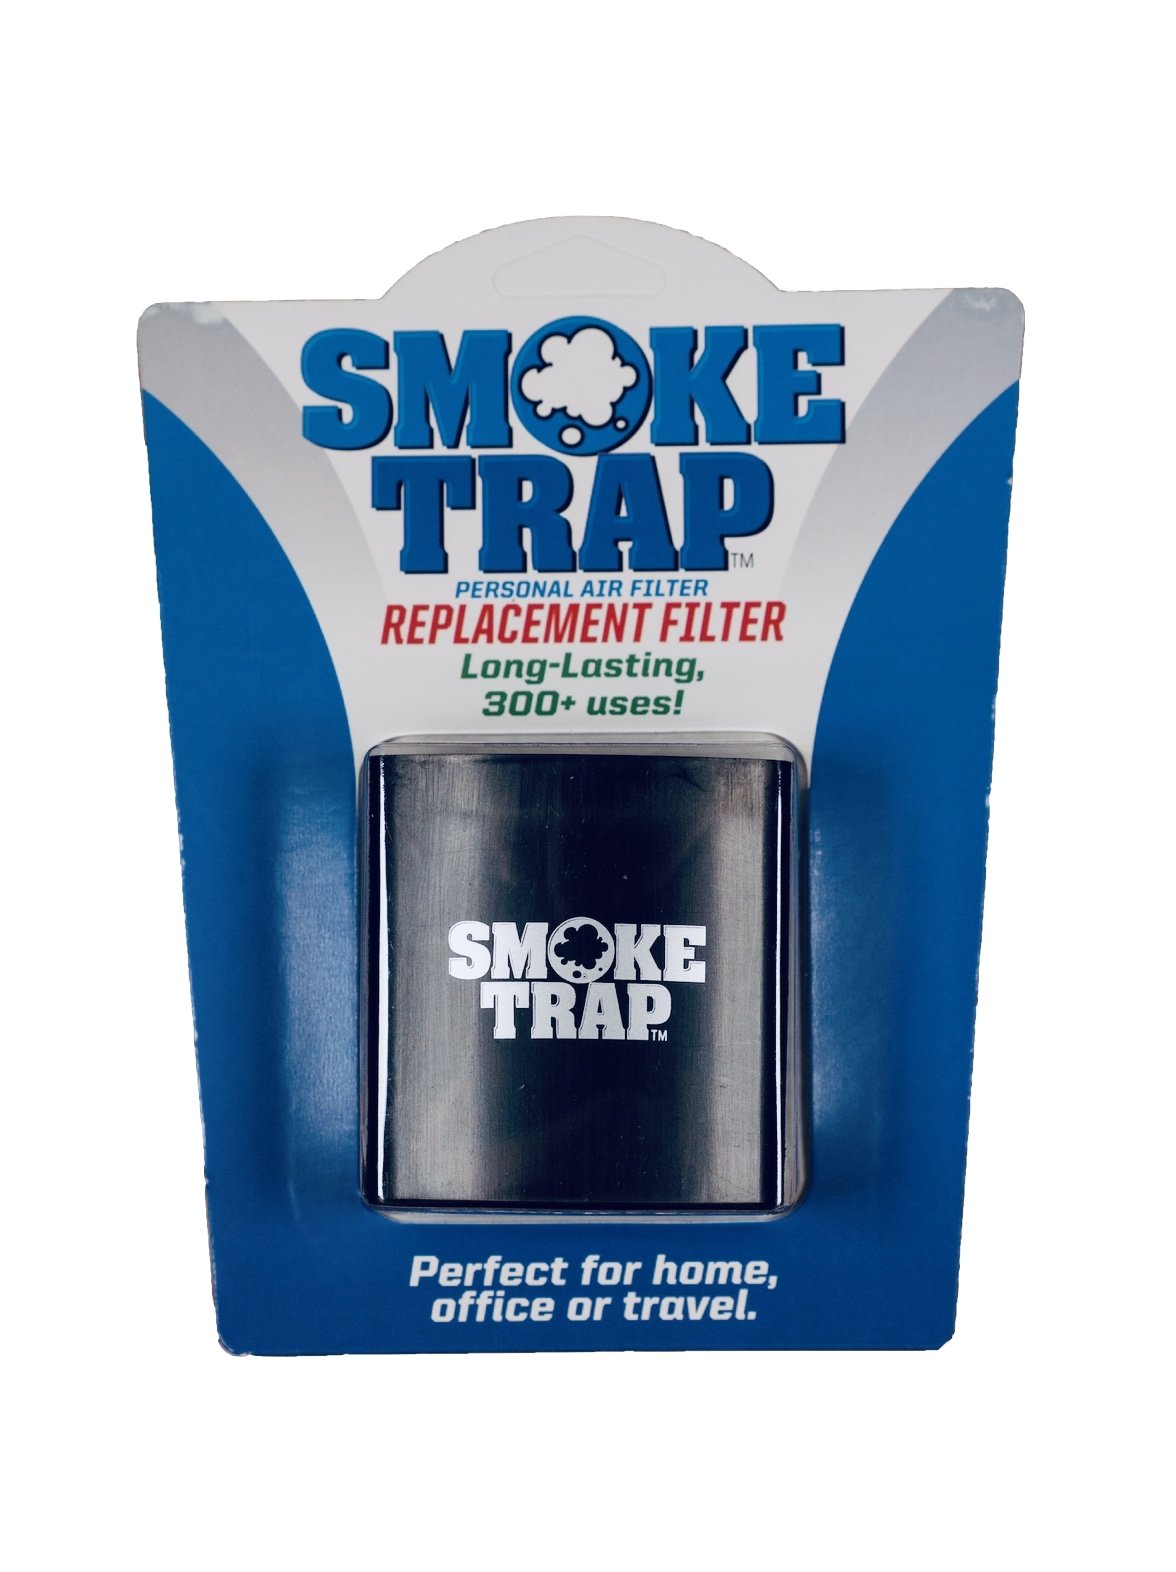 SuvoLabs™ Smoke Trap – SUVO LABS®